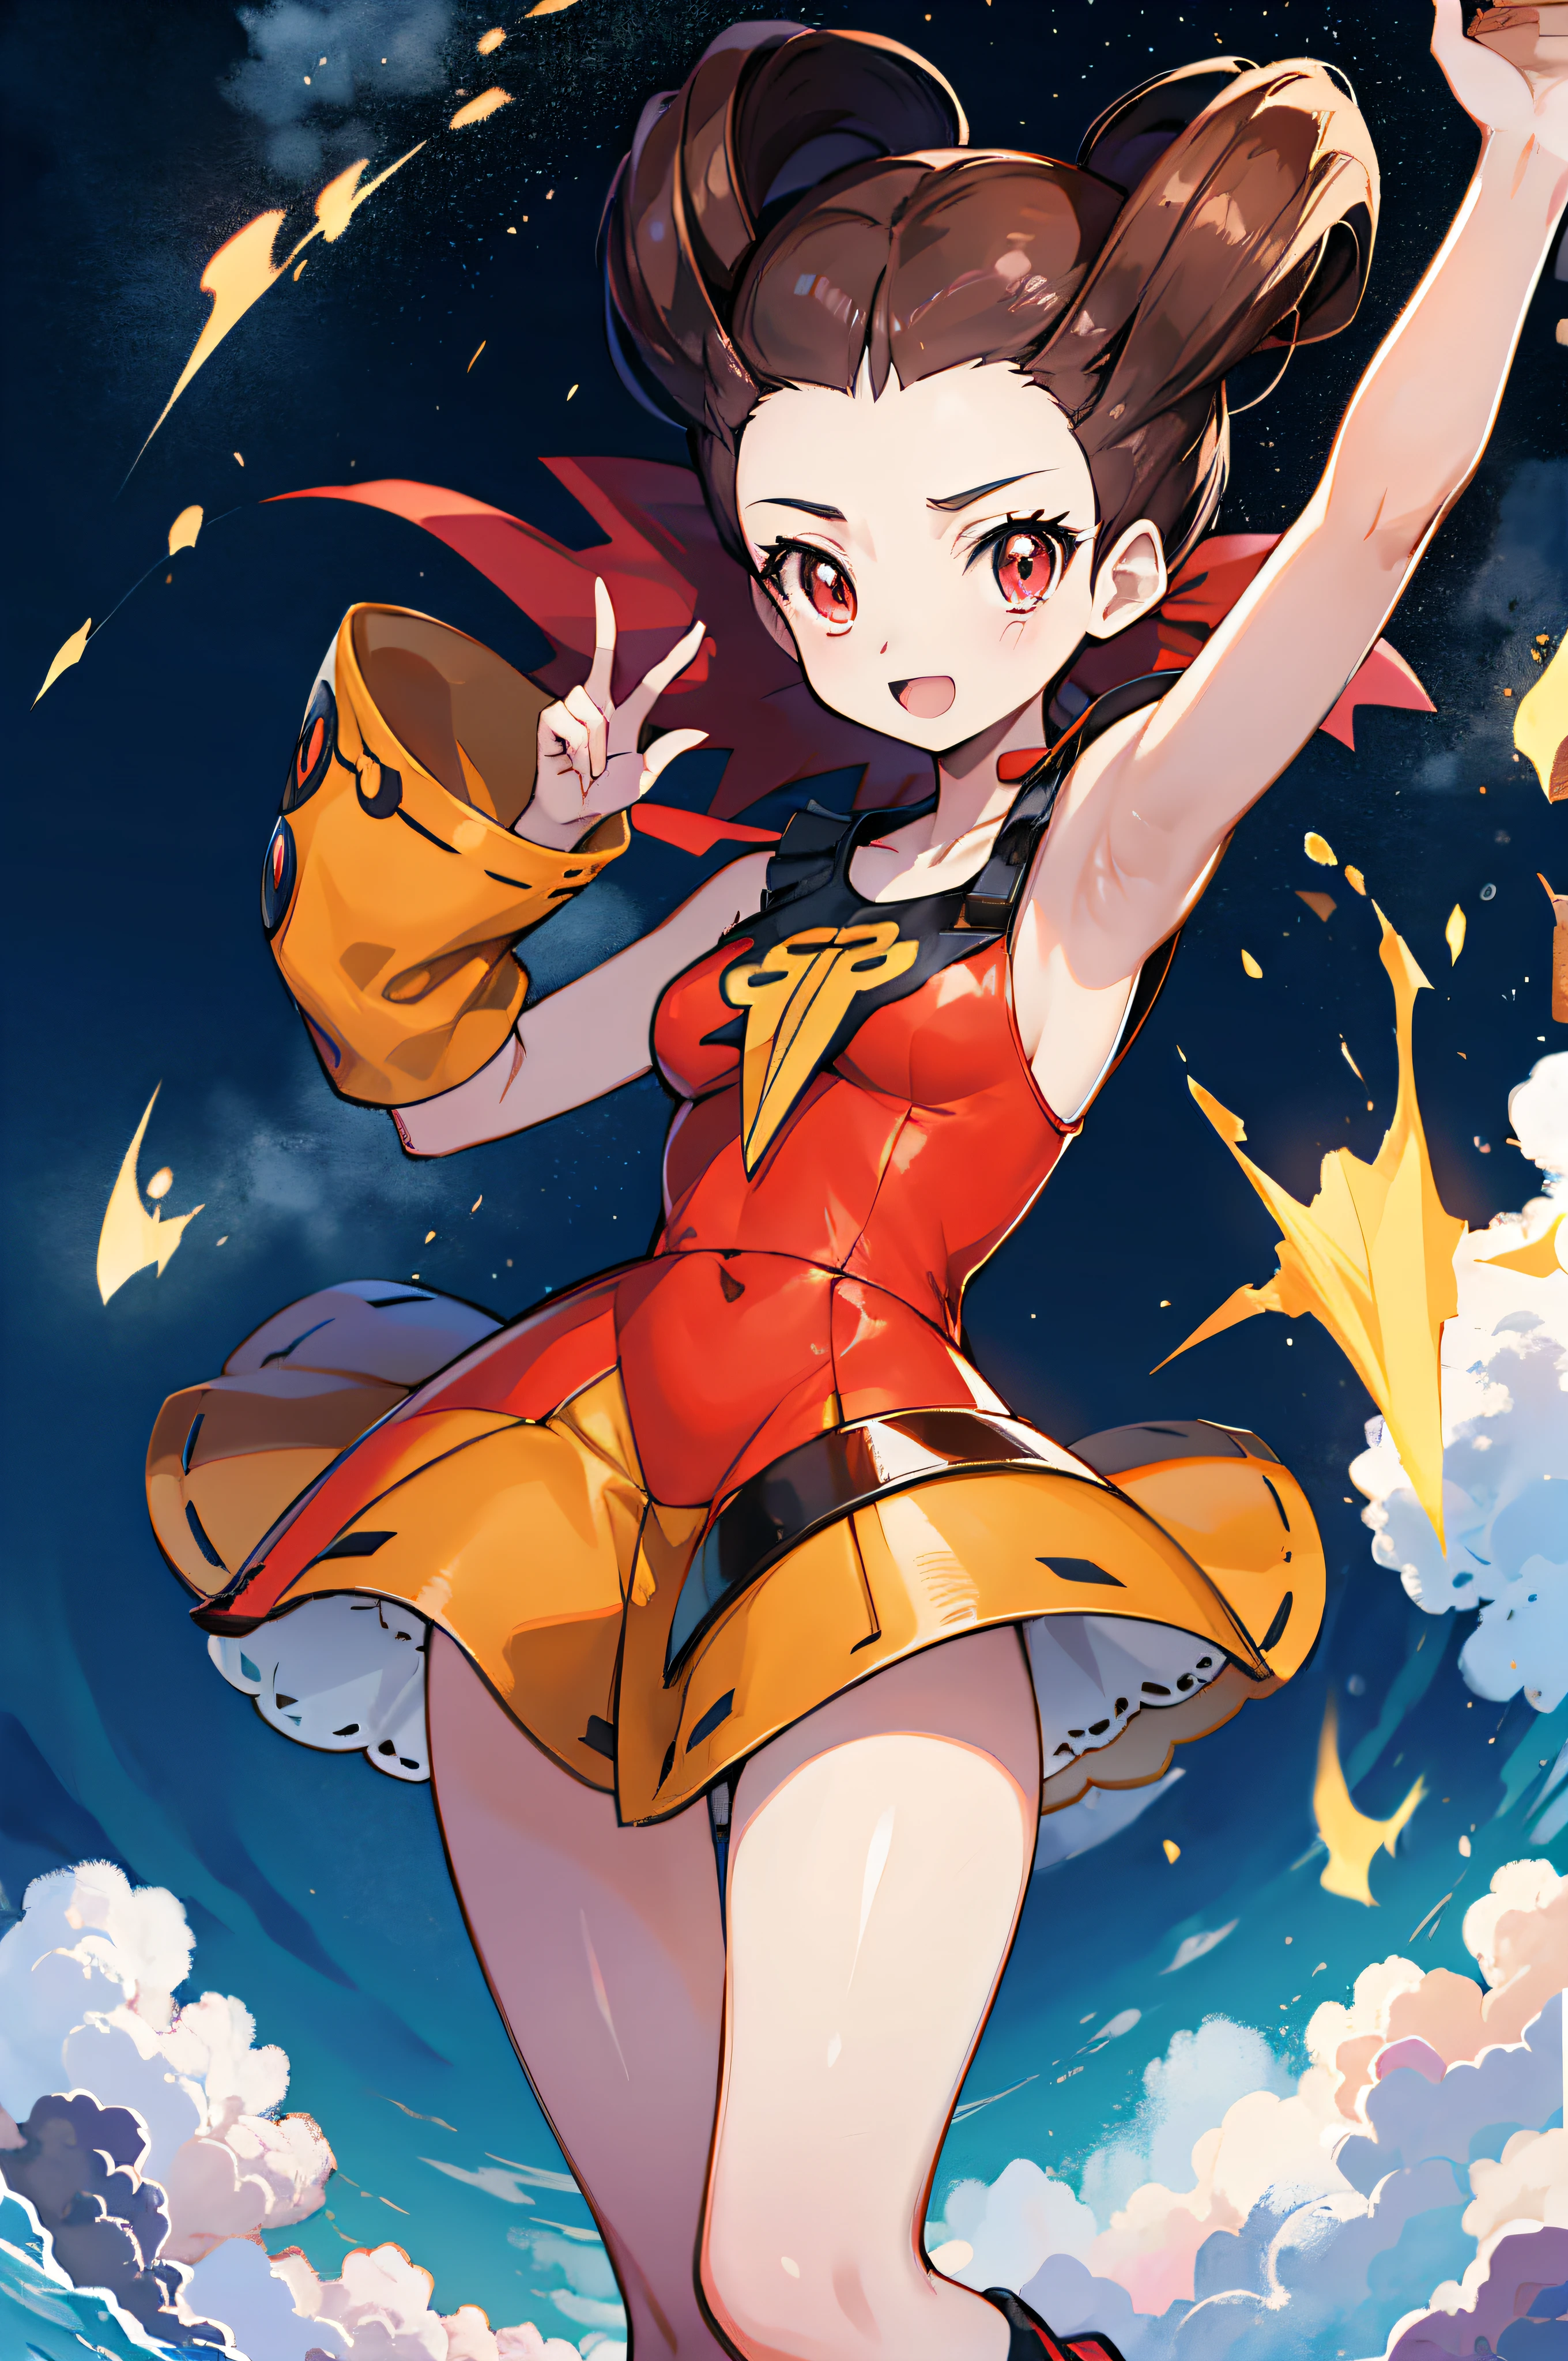 Anime-Stil, Die Umgebung voller Feuer, Mit Pokémon spielen , Roxanne( Charakter) ist in einem Standard-Outfit, lange Haare, braune Farbe, orangefarbene Augen, lächelnd, ultrarealistisch, Ganzkörper, 2D